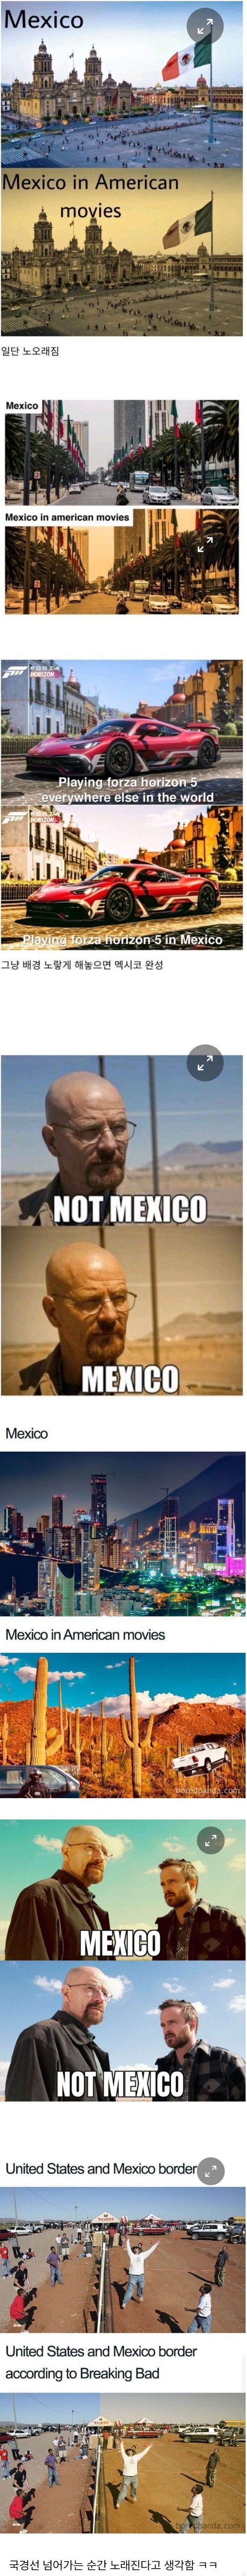 미국인들이 생각하는 멕시코 특징